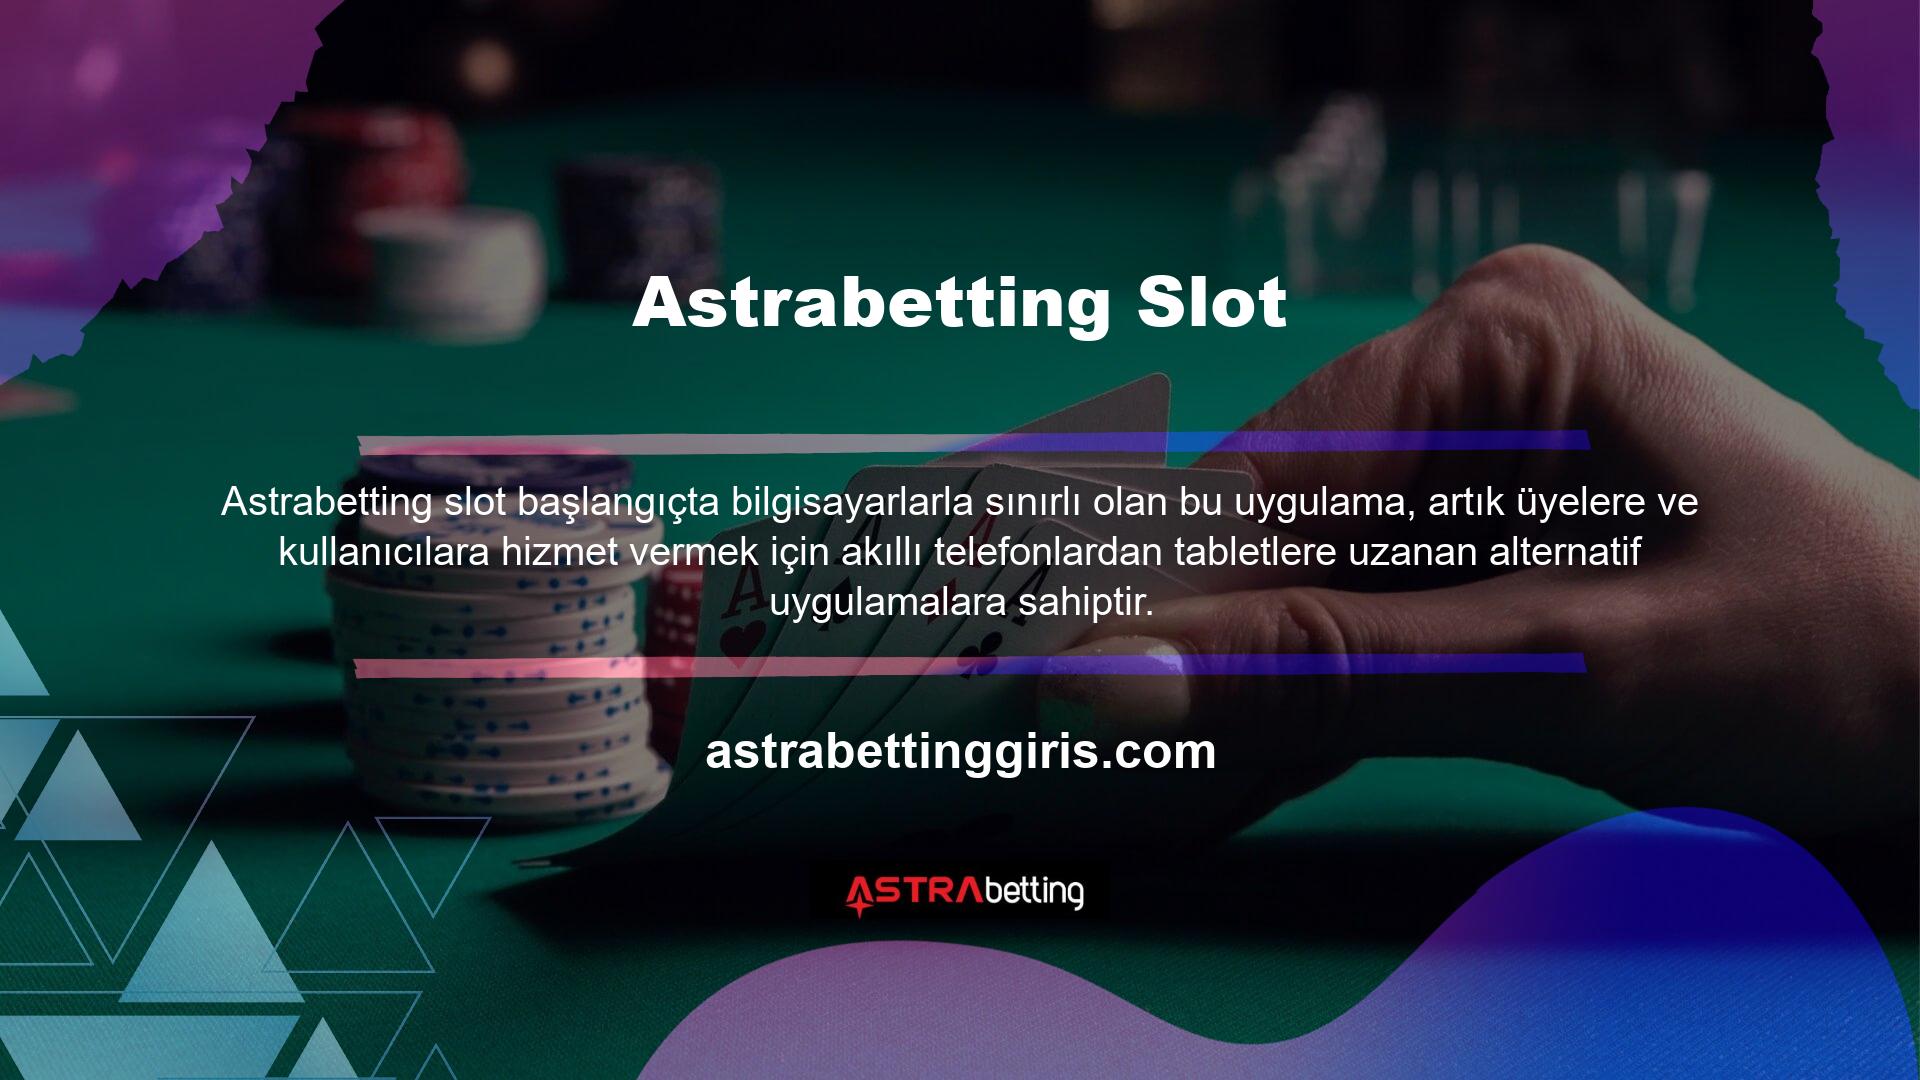 Astrabetting hizmetleri, genellikle para kazanan ve hedeflerine ulaşmak için güven arayan İnternet kullanıcıları arasında aktif bir rol oynadığı bilinmektedir